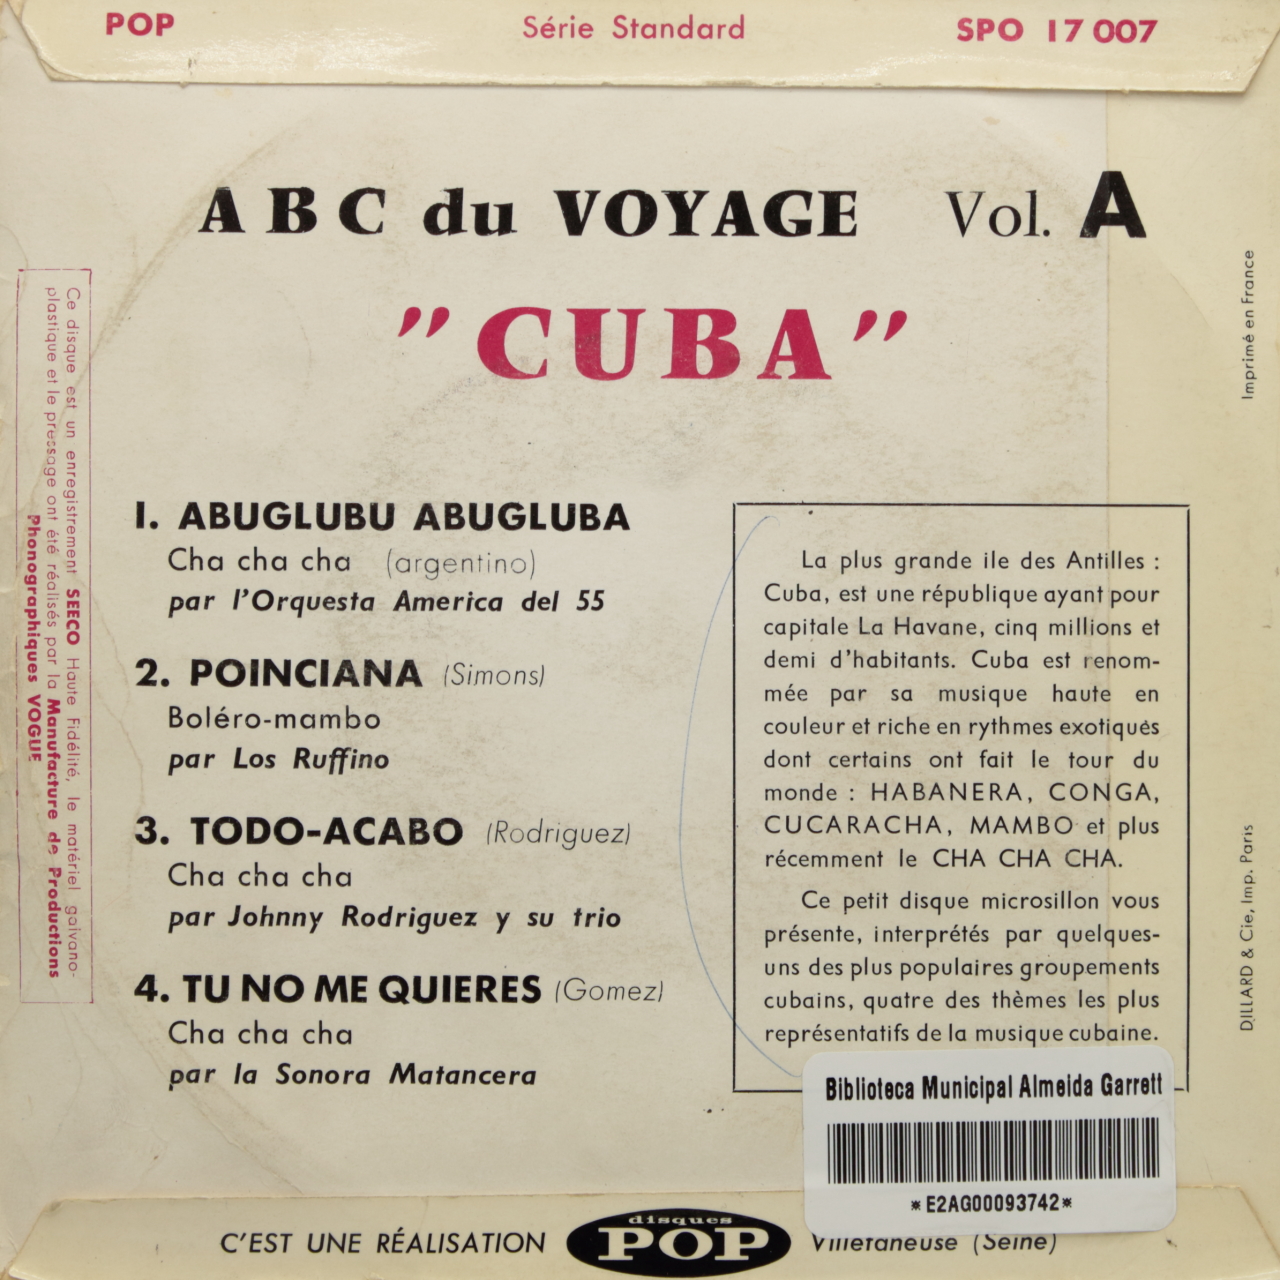 ABC du voyage Vol. A: Cuba